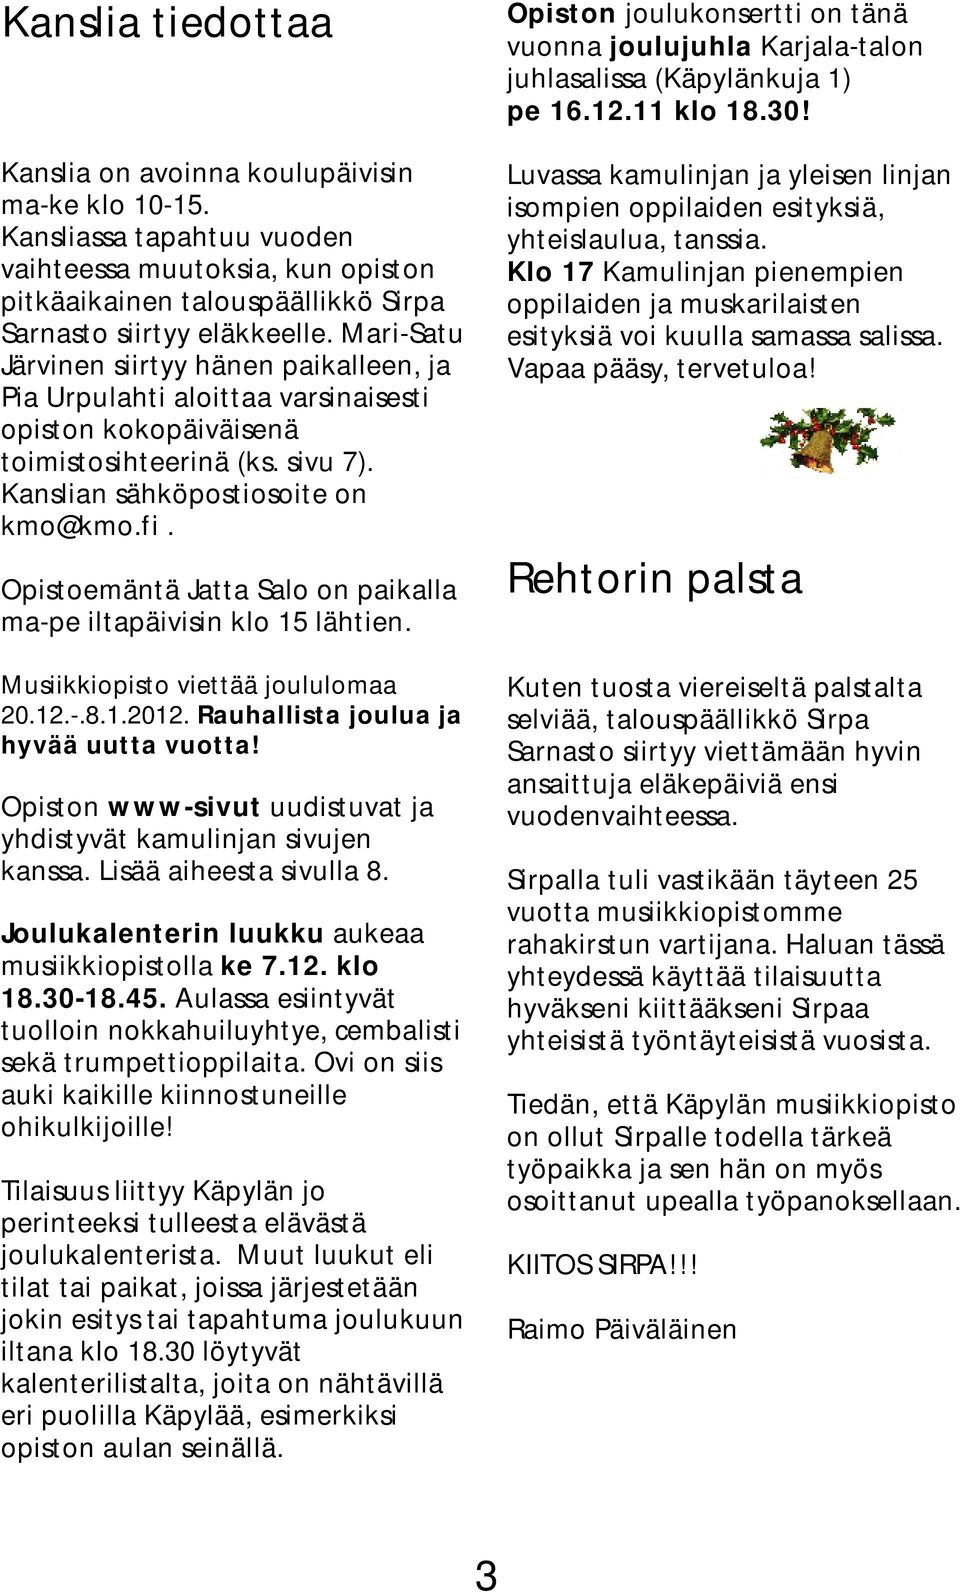 Opistoemäntä Jatta Salo on paikalla ma-pe iltapäivisin klo 15 lähtien. Musiikkiopisto viettää joululomaa 20.12.-.8.1.2012. Rauhallista joulua ja hyvää uutta vuotta!